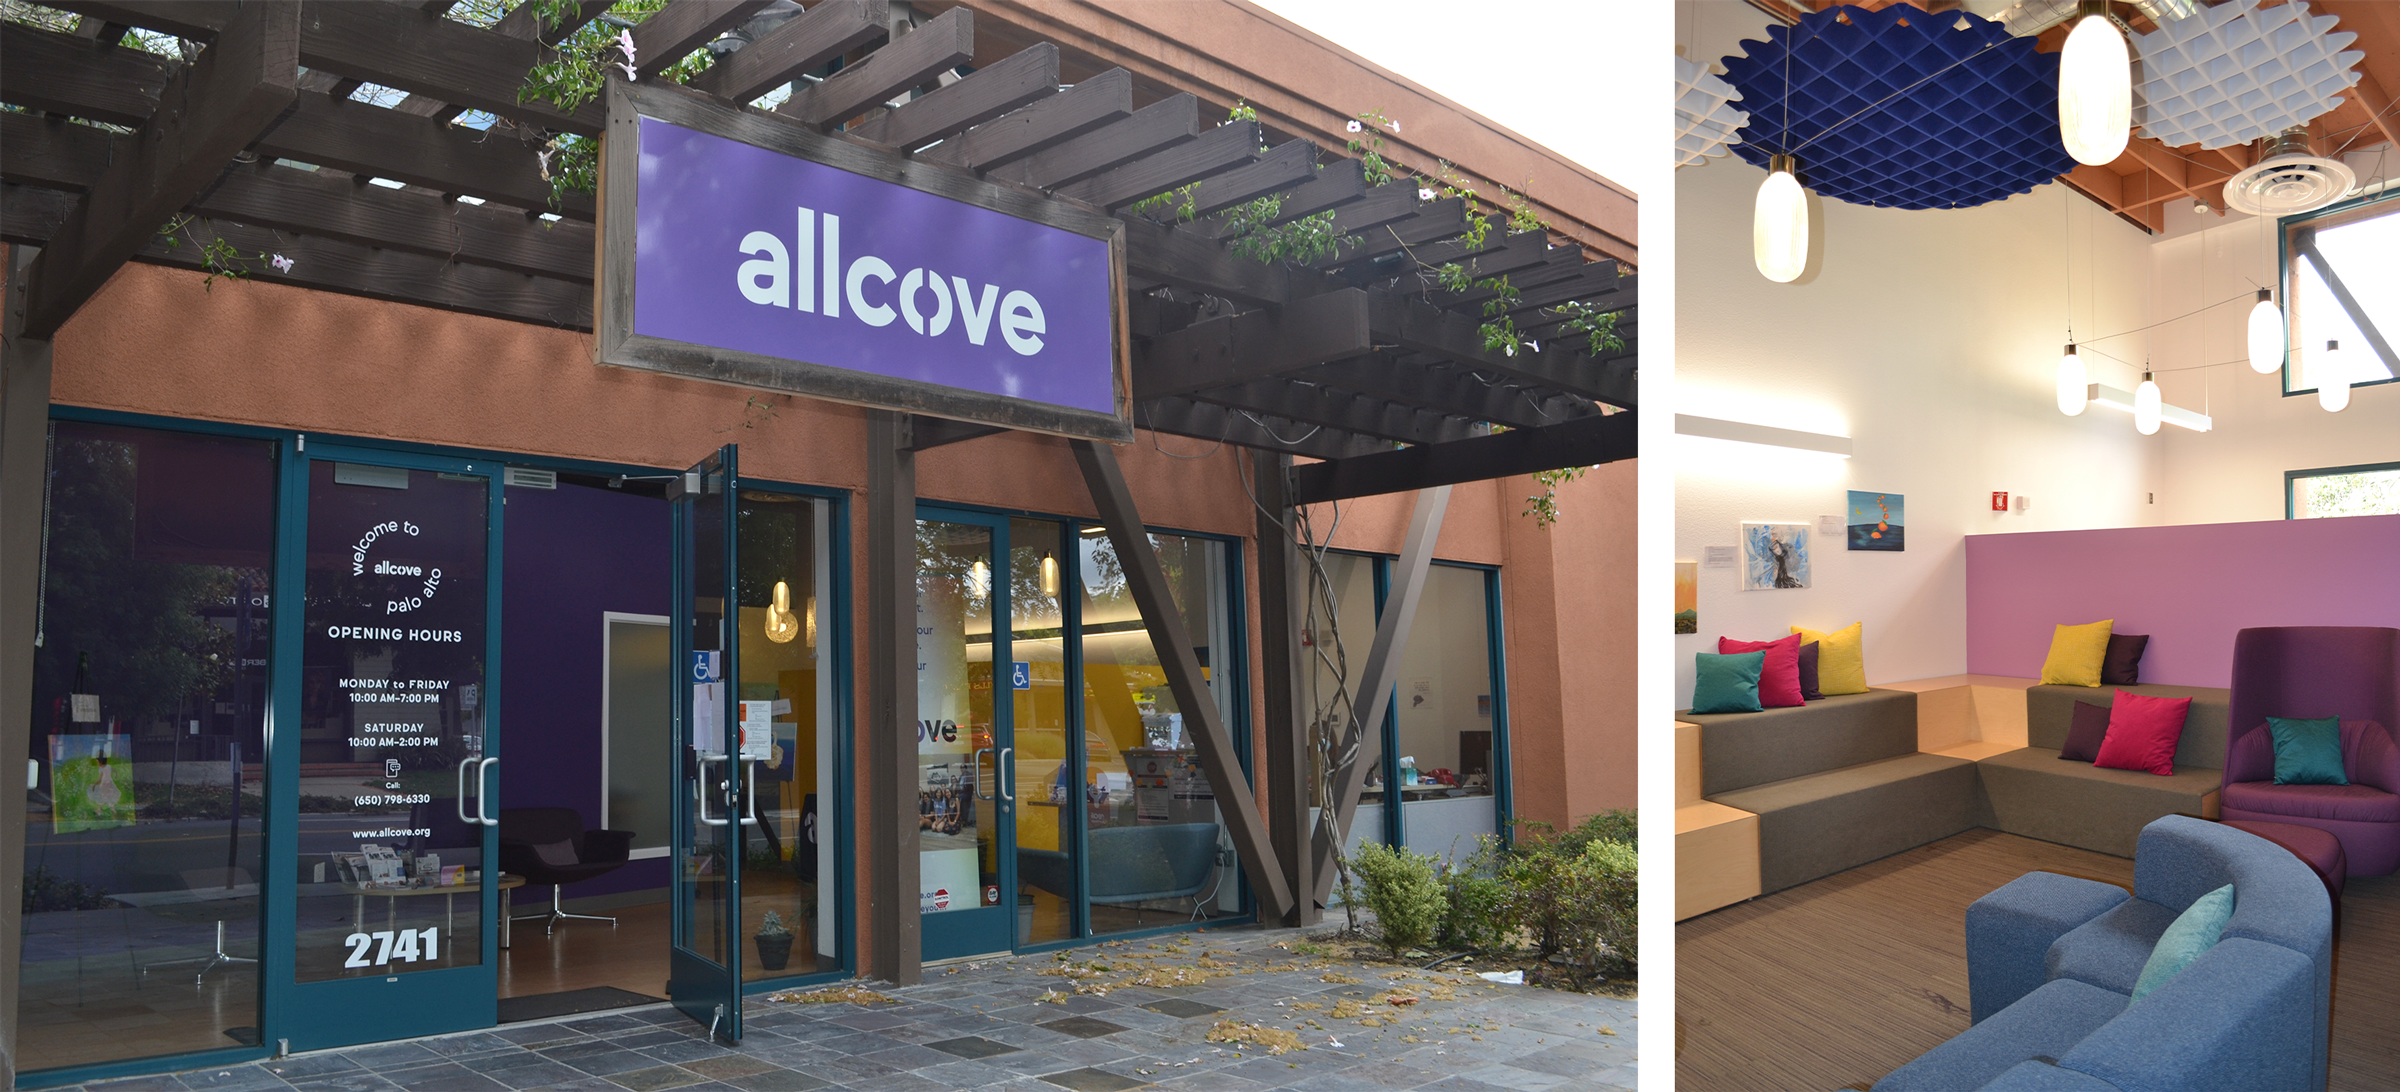 Photos of exterior and interior of the allcove center in Palo Alto, California